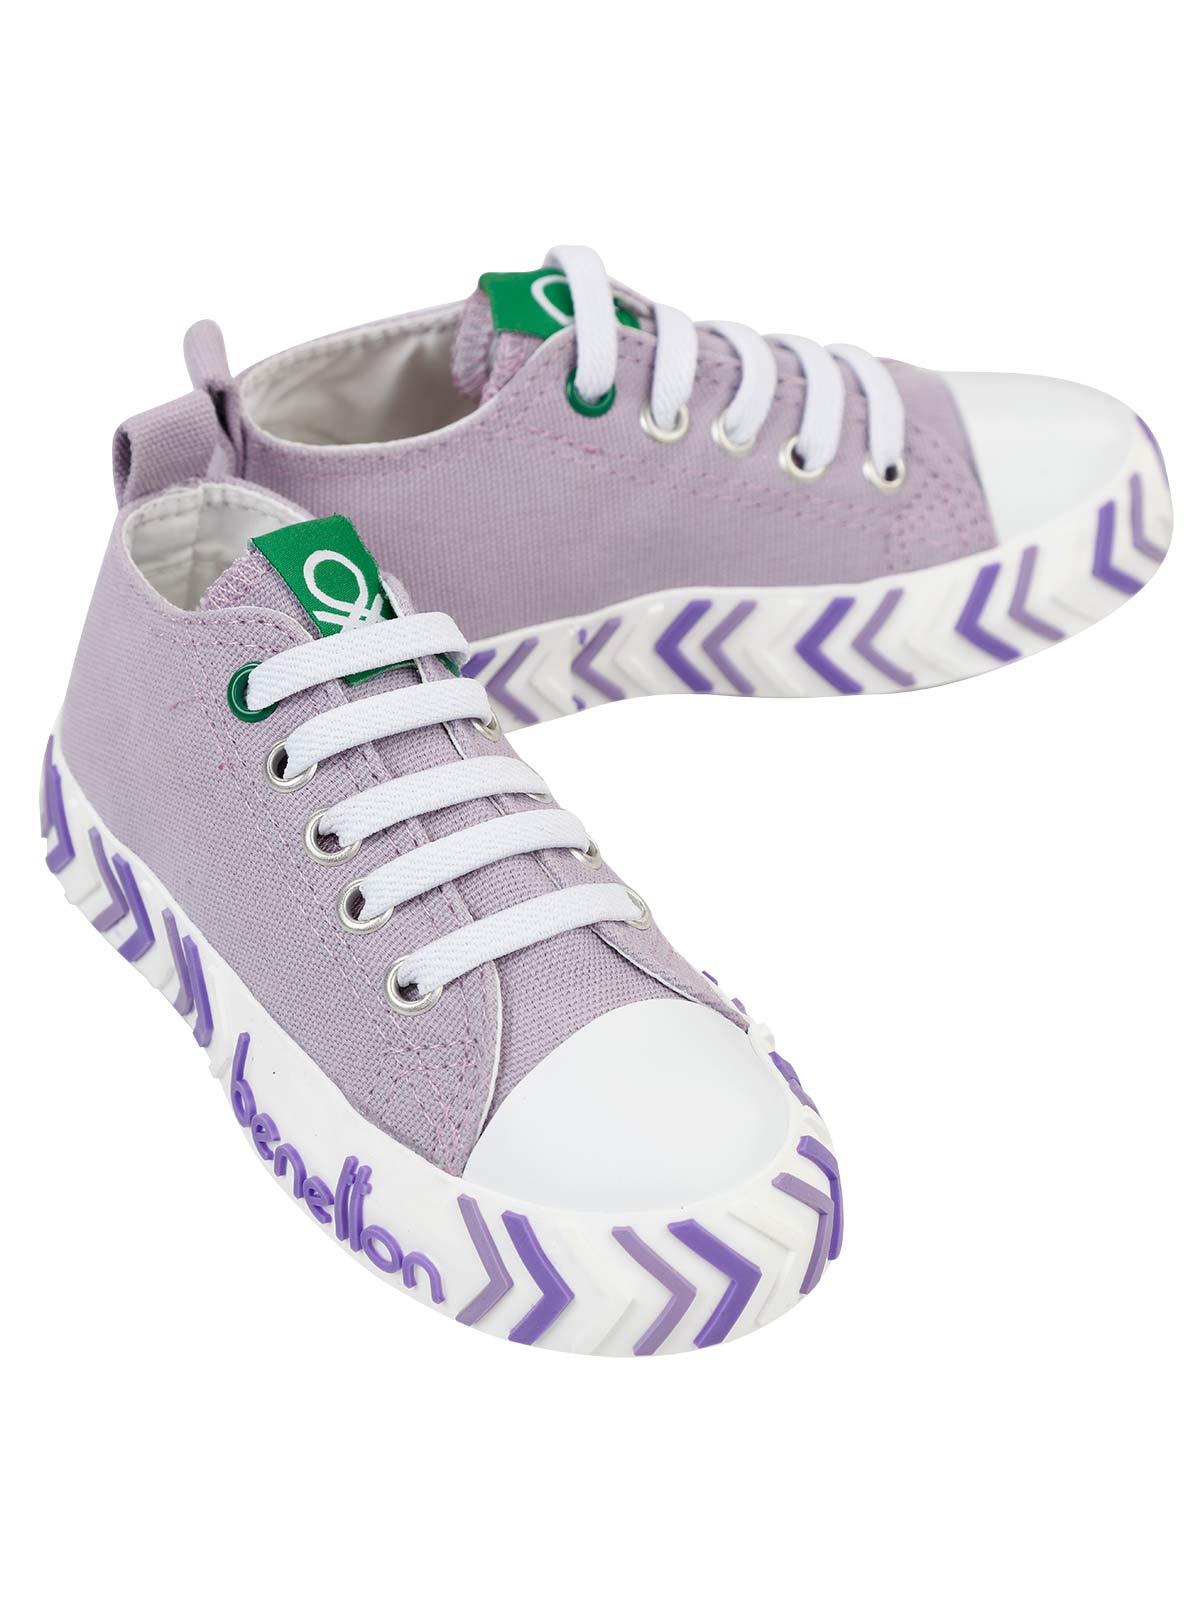 Benetton Kız Çocuk Spor Ayakkabı 26-30 Numara Lila